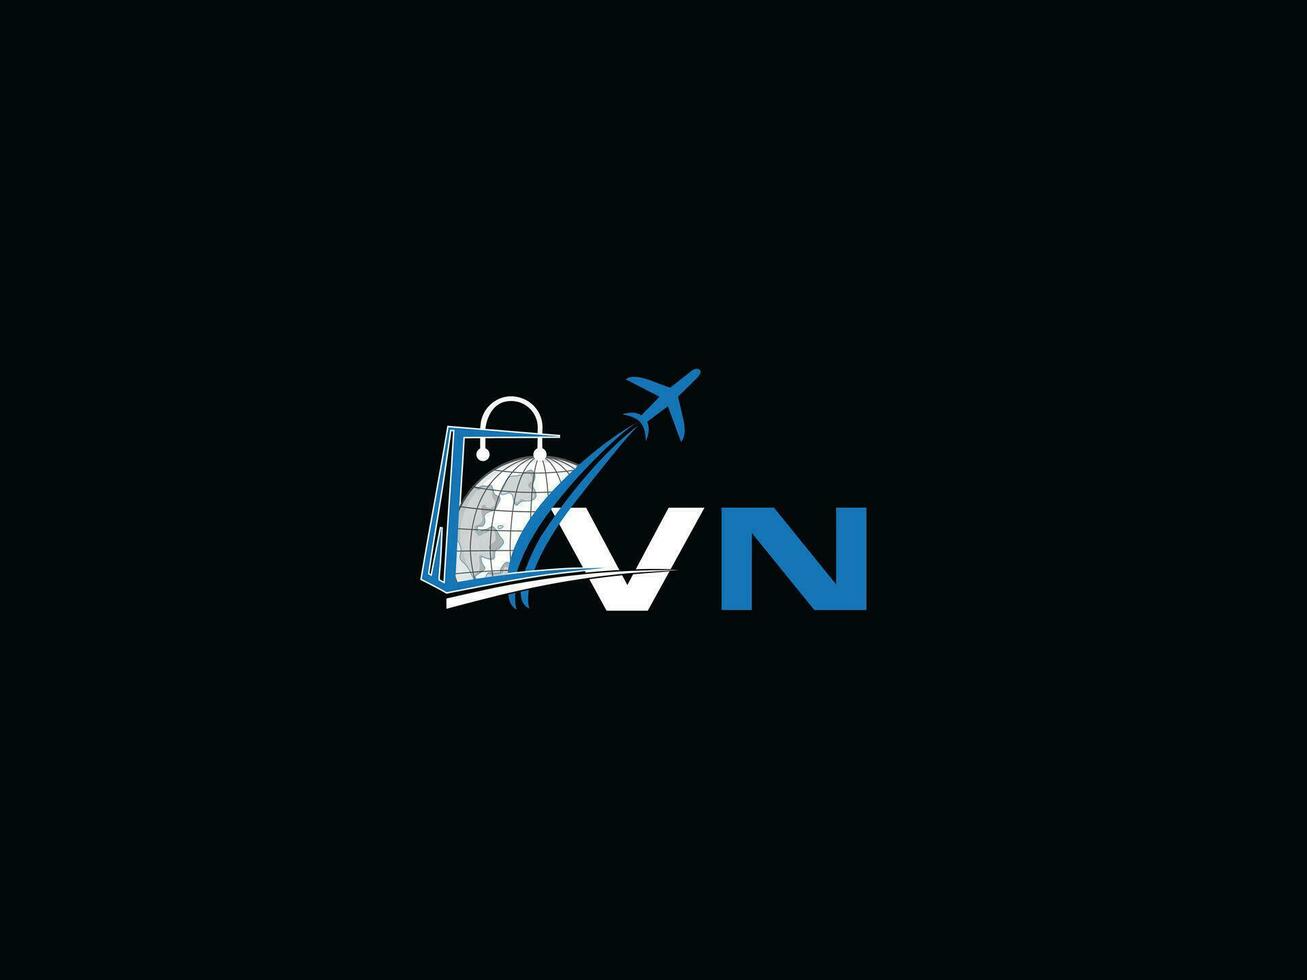 semplice aria vn viaggio logo icona, iniziale globale vn logo per viaggio agenzia vettore